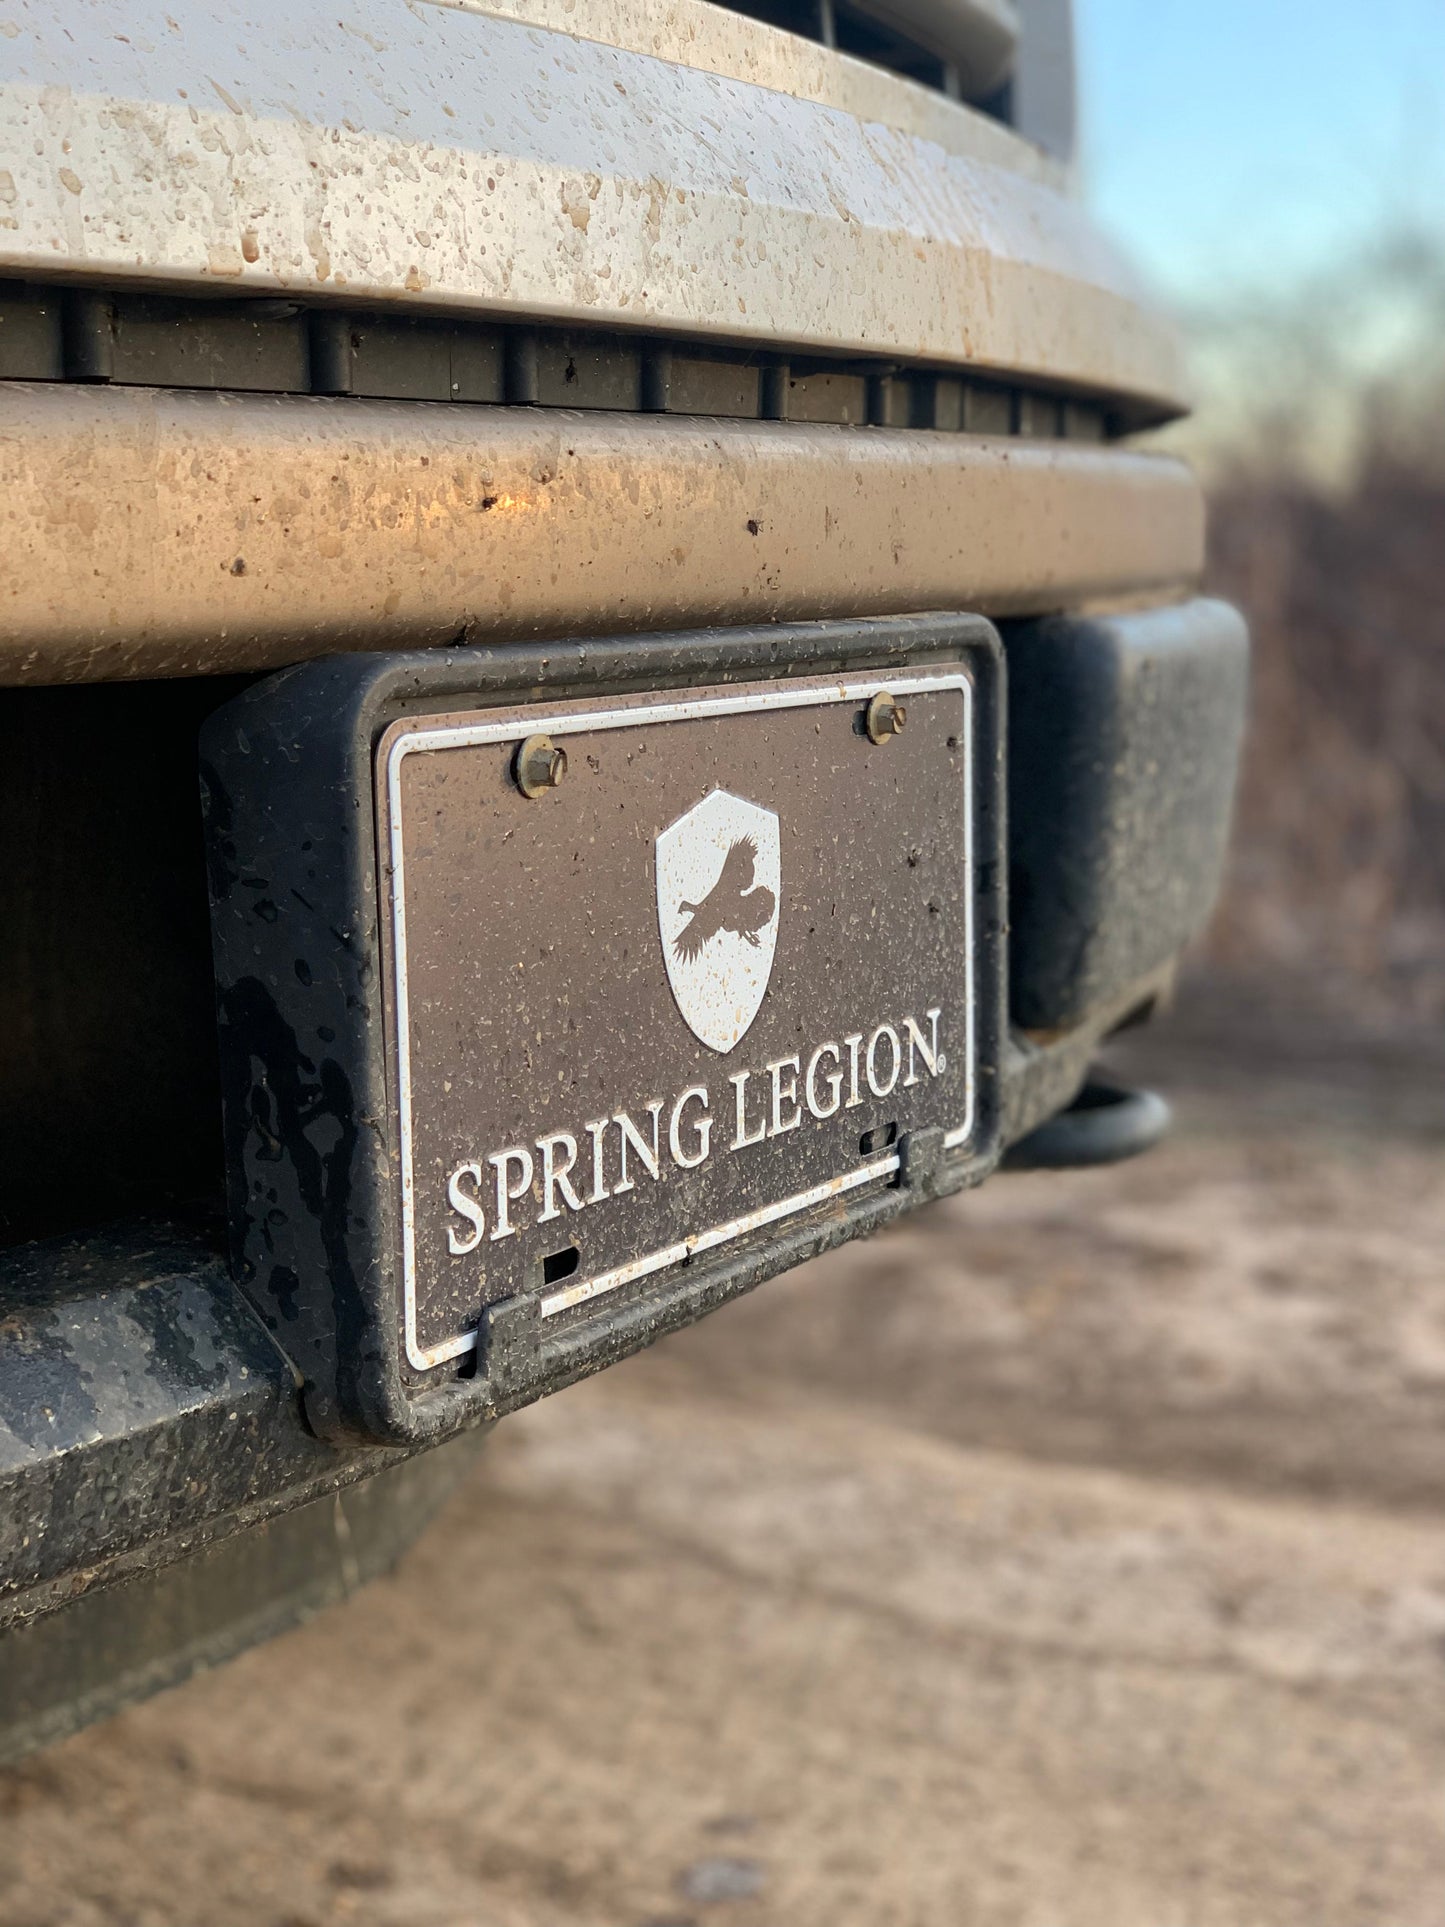 Spring Legion License Plate - White